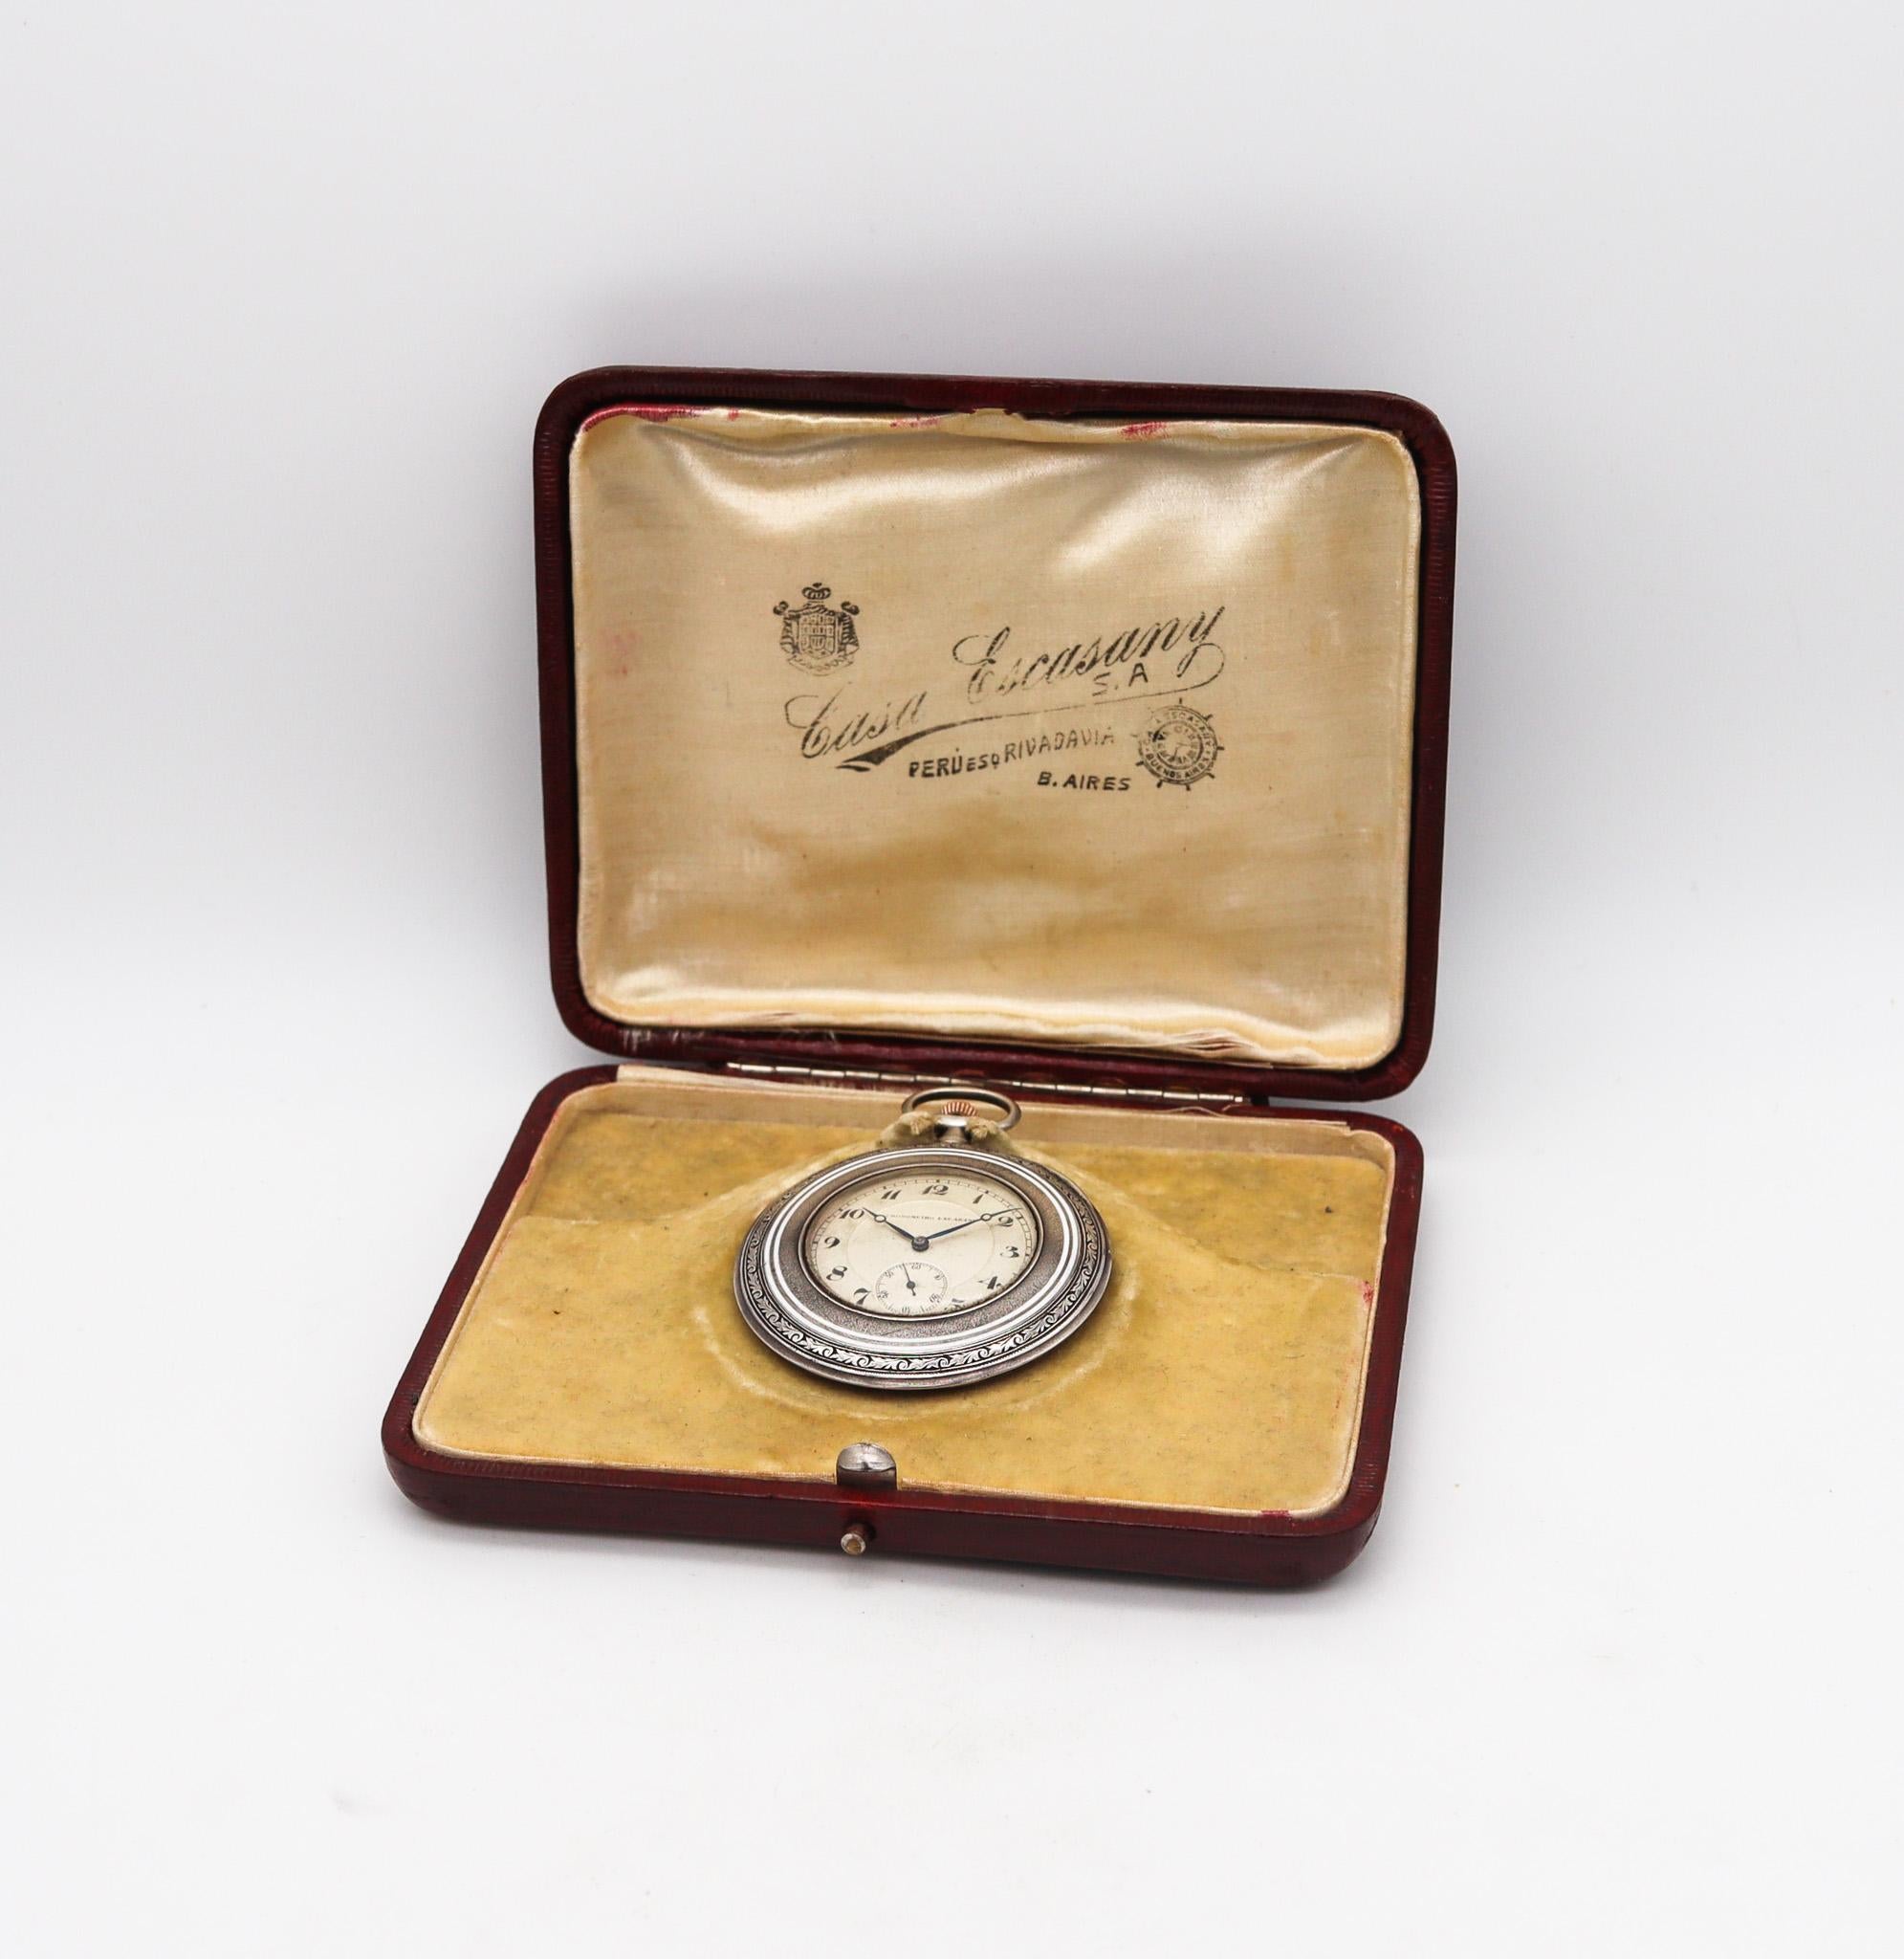 Eine edwardianische Taschenuhr von George Stockwell & Co.

Ein erstaunliches und sehr schönes Stück, das während der Edwardianischen Periode im Jahre 1911 geschaffen wurde. Das Uhrwerk wurde in der Schweiz hergestellt, das Gehäuse von dem Londoner